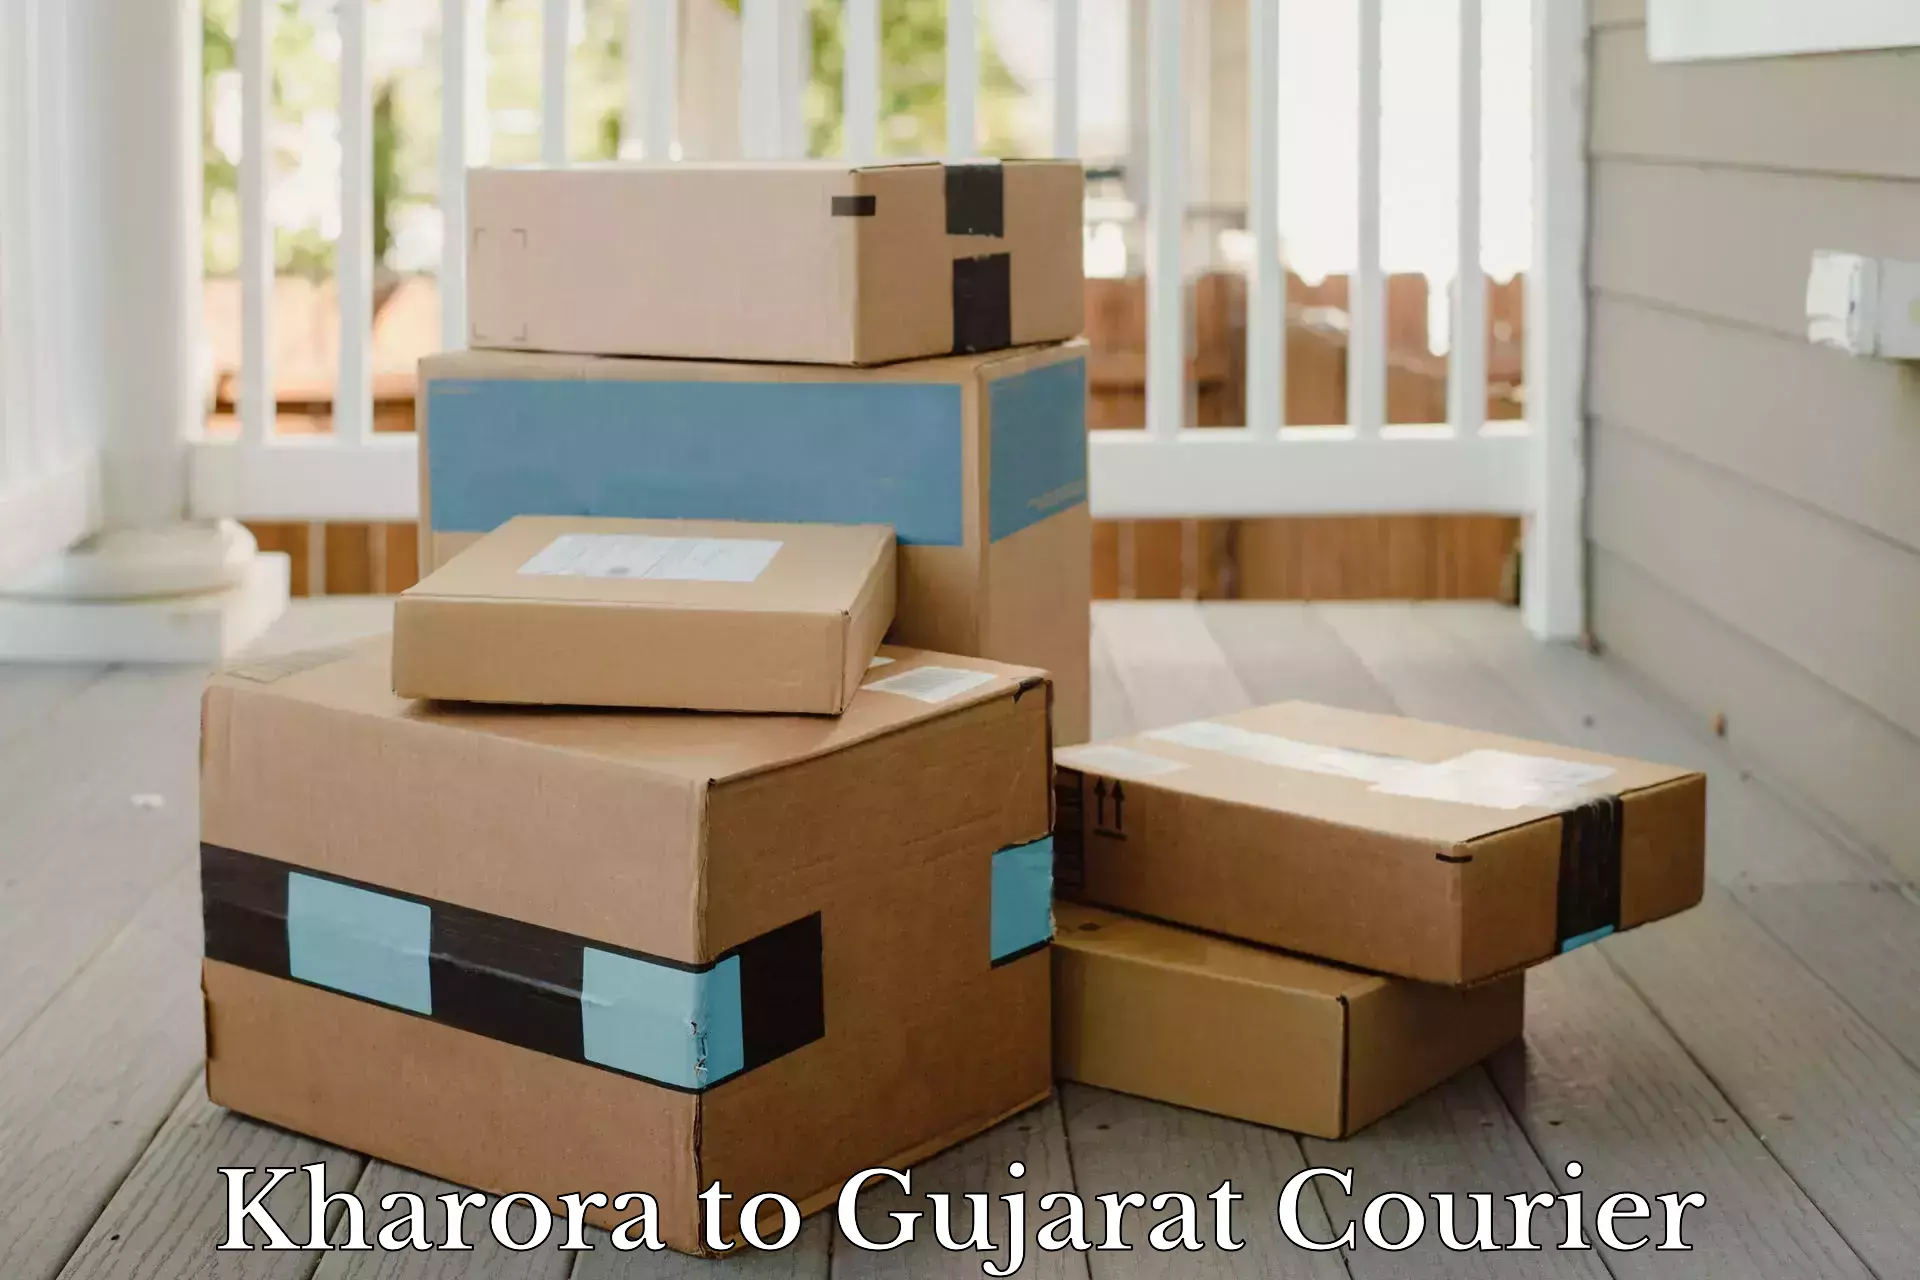 24/7 courier service Kharora to Mahuva